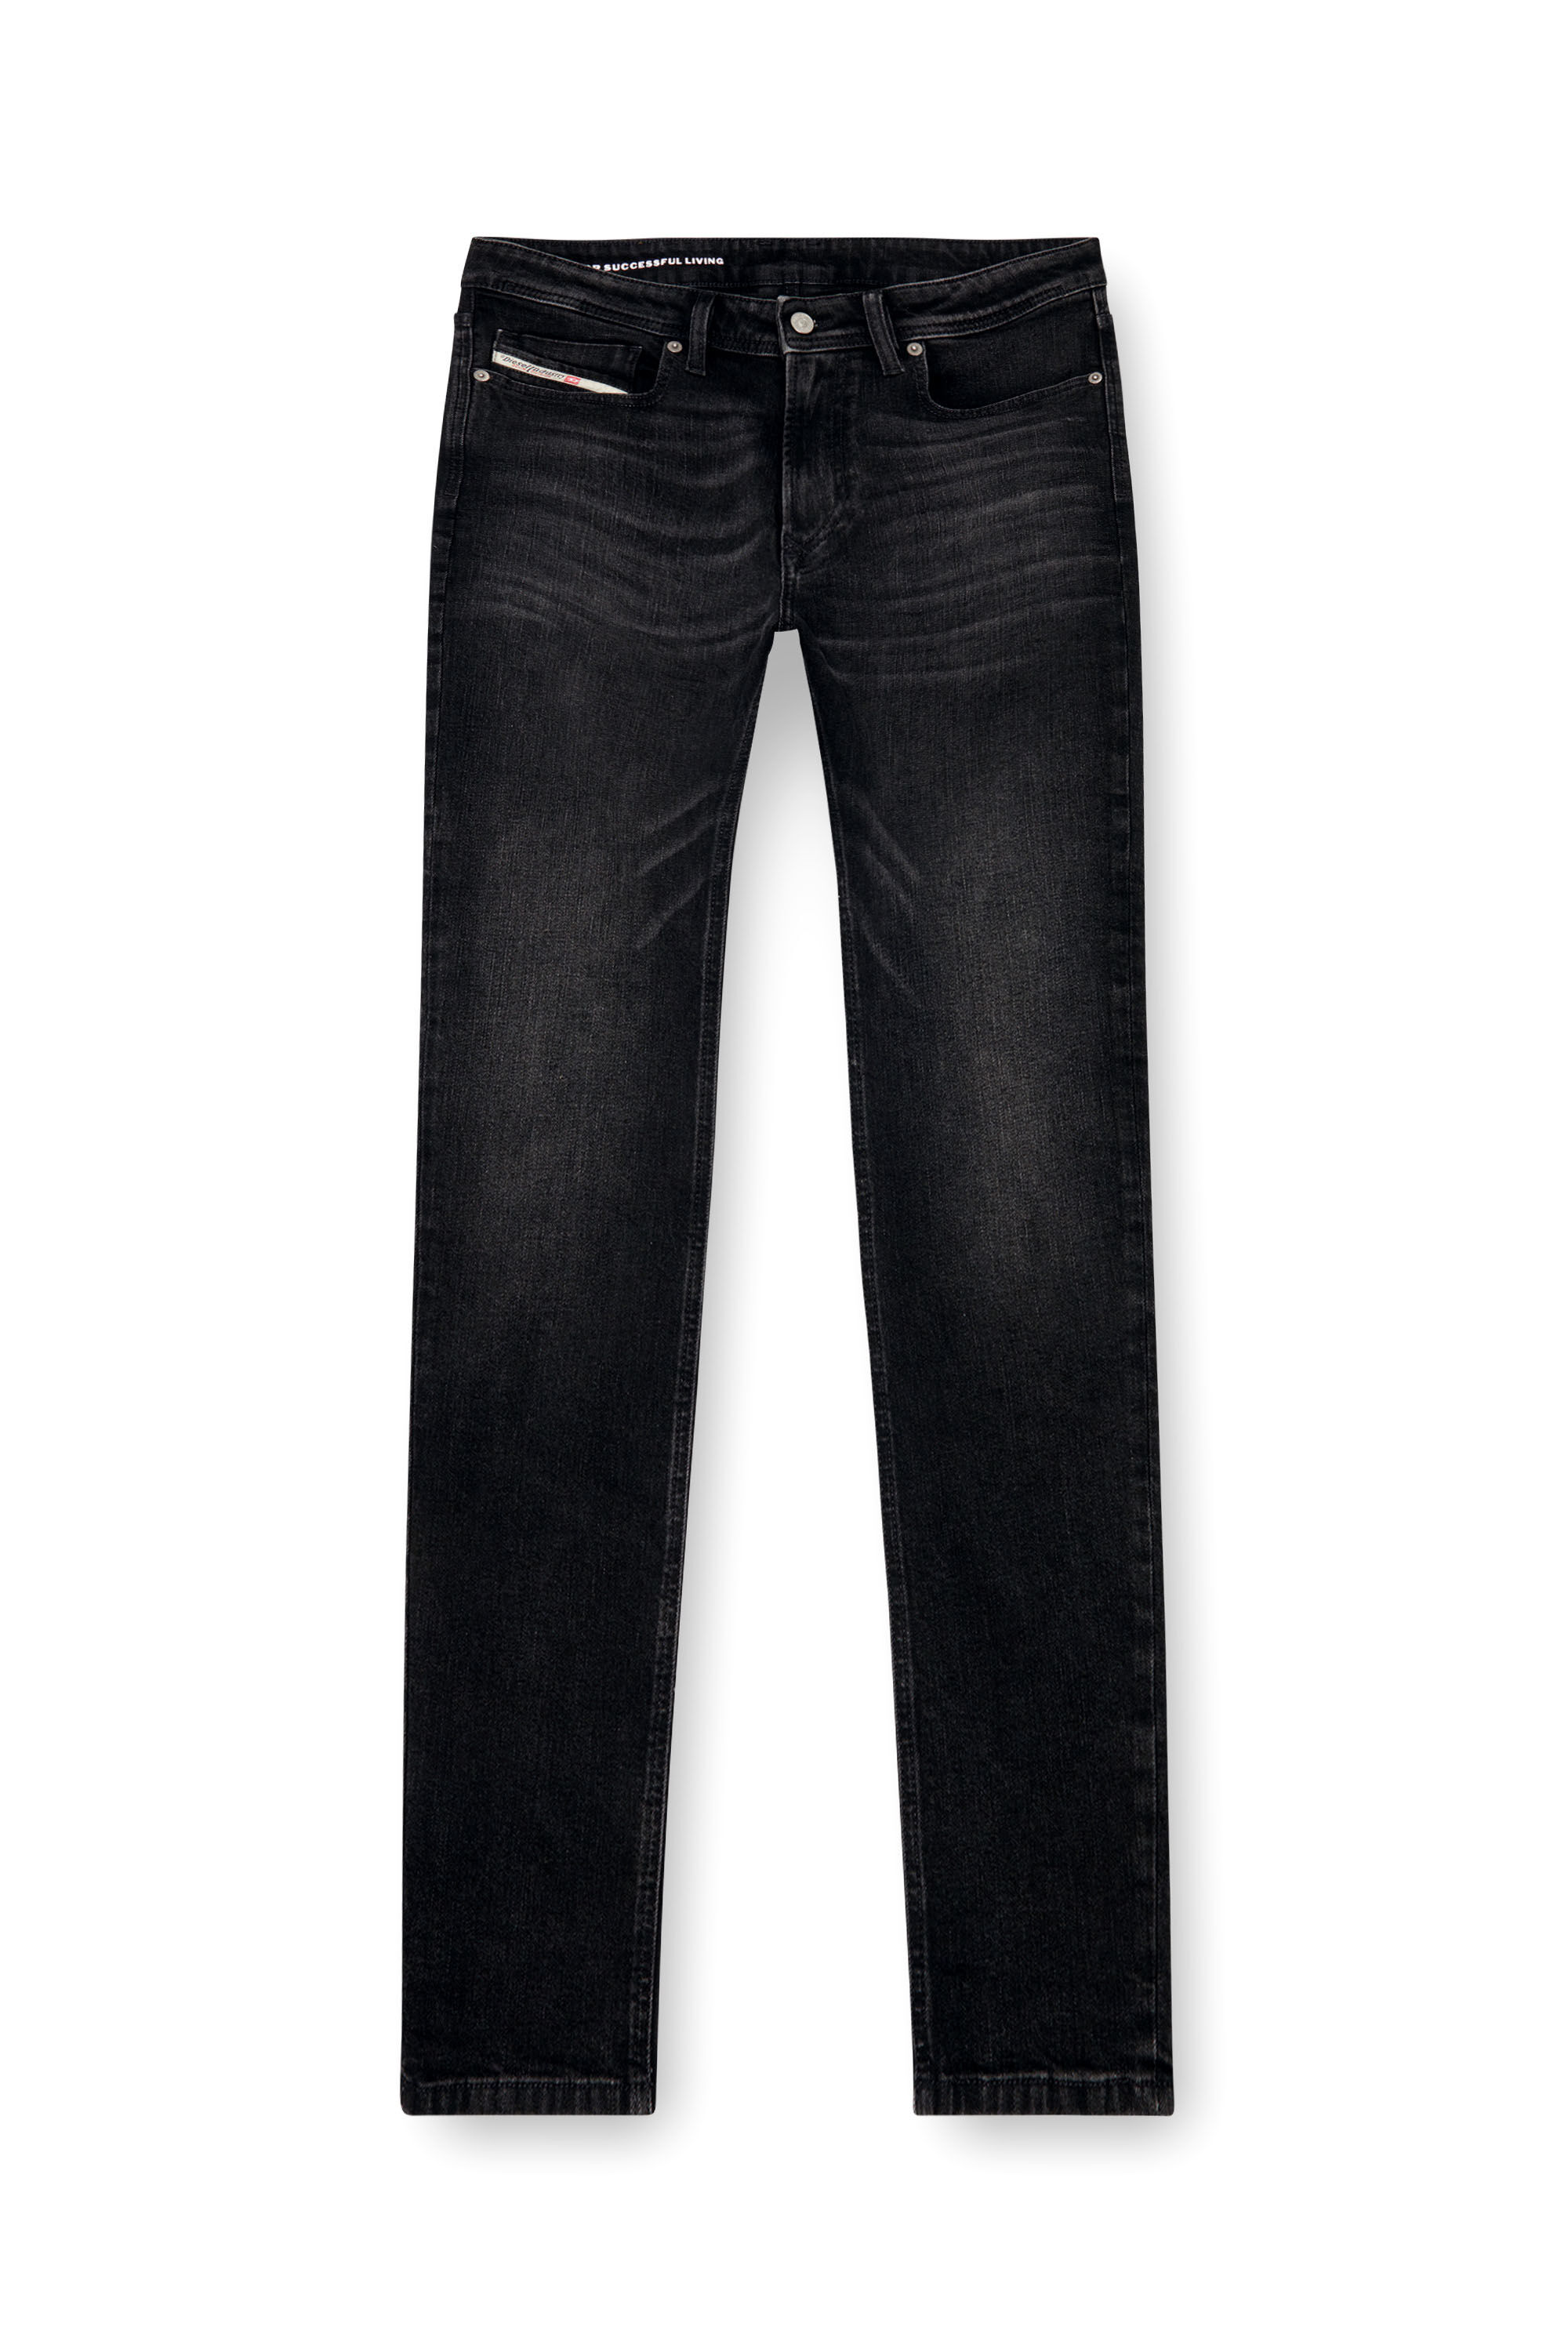 Diesel - Man Skinny Jeans 1979 Sleenker 0GRDA, Black/Dark grey - Image 2